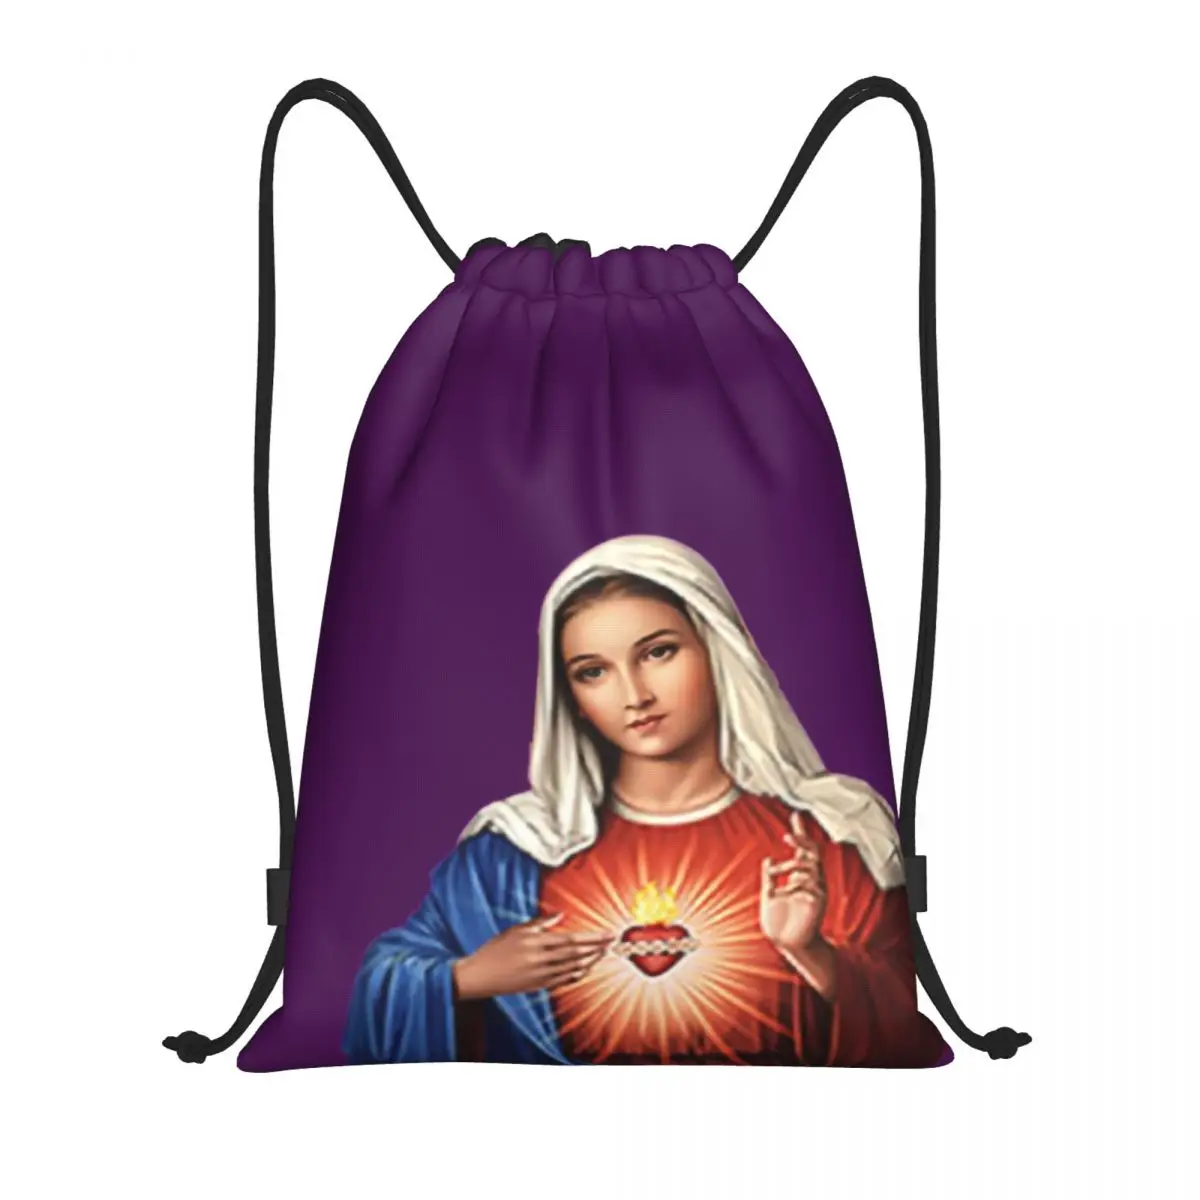 Мария, Богоматерь Вечной Помощи, сумки на шнурках, легкий рюкзак для хранения в христианском стиле, Дева Мария, спортивный рюкзак для спортзала